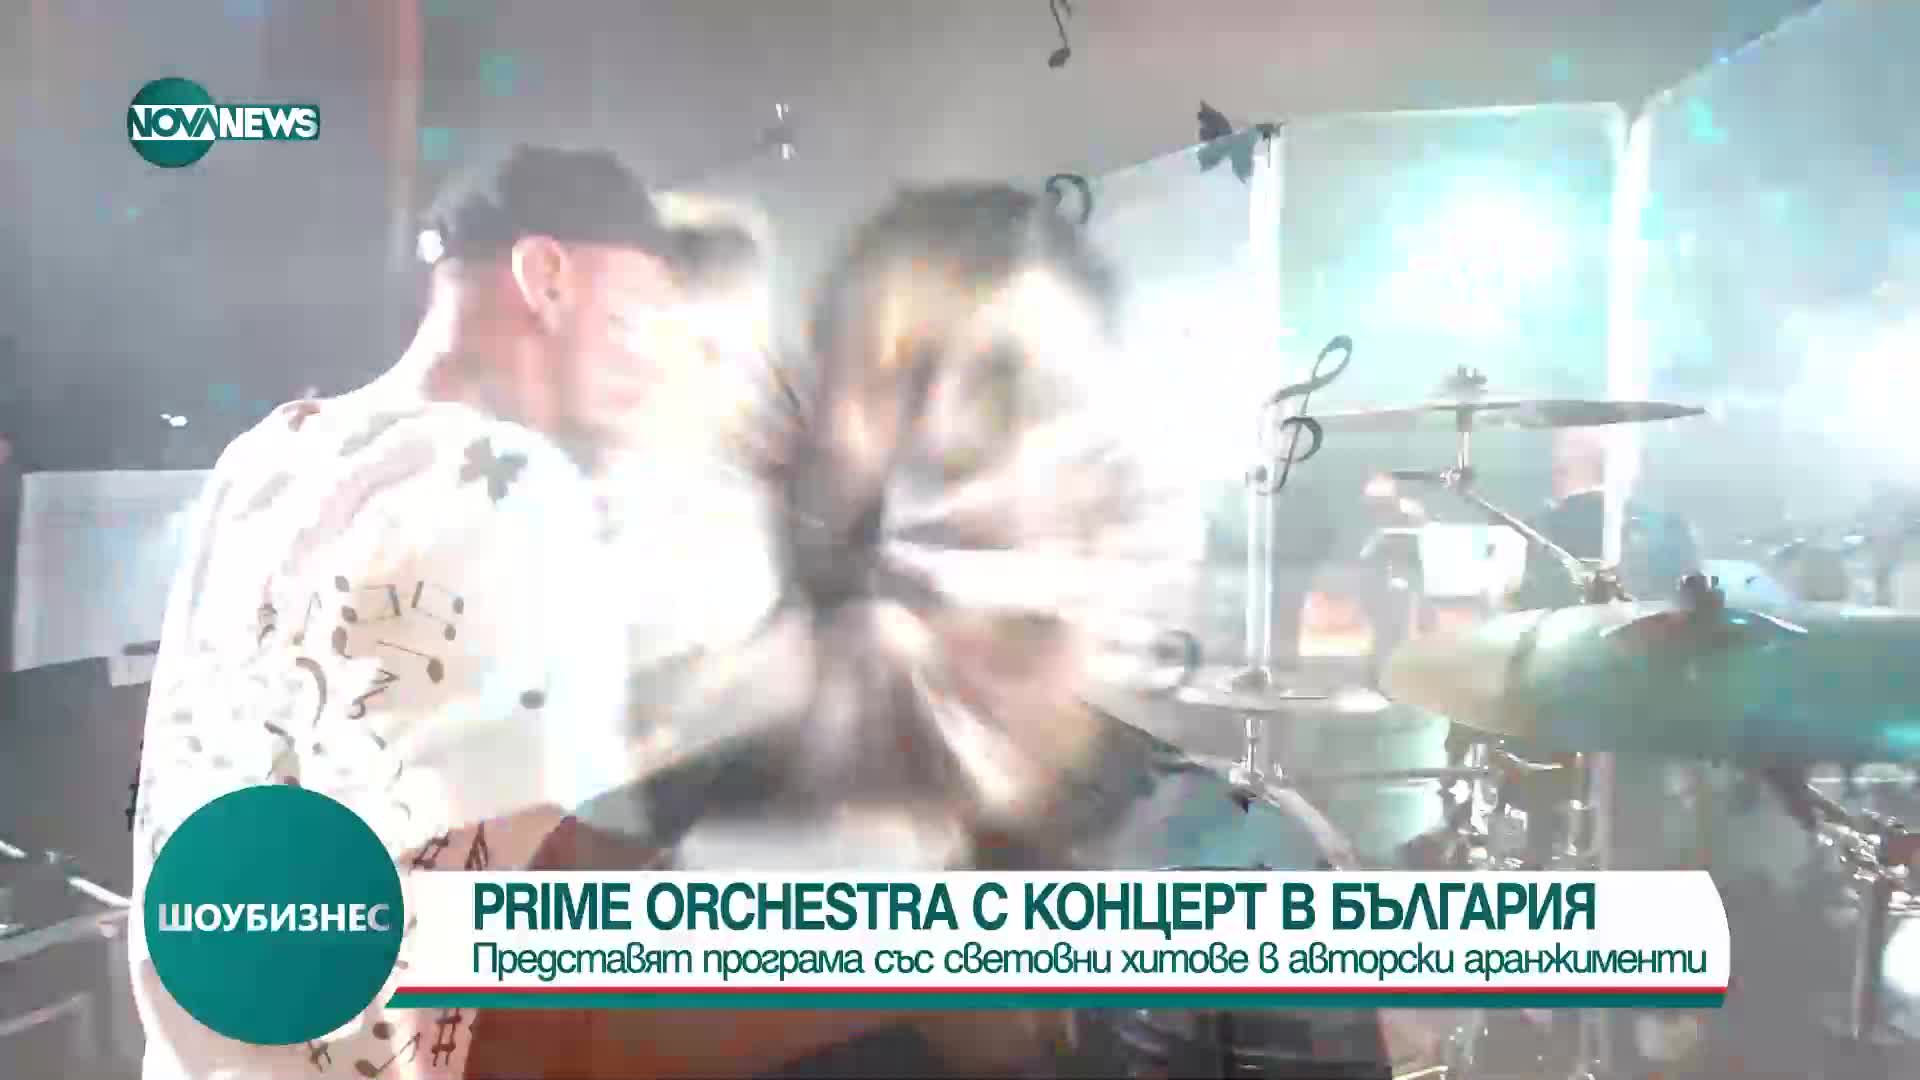 Украински оркестър представя рок програма със световни хитове в авторски аранжименти